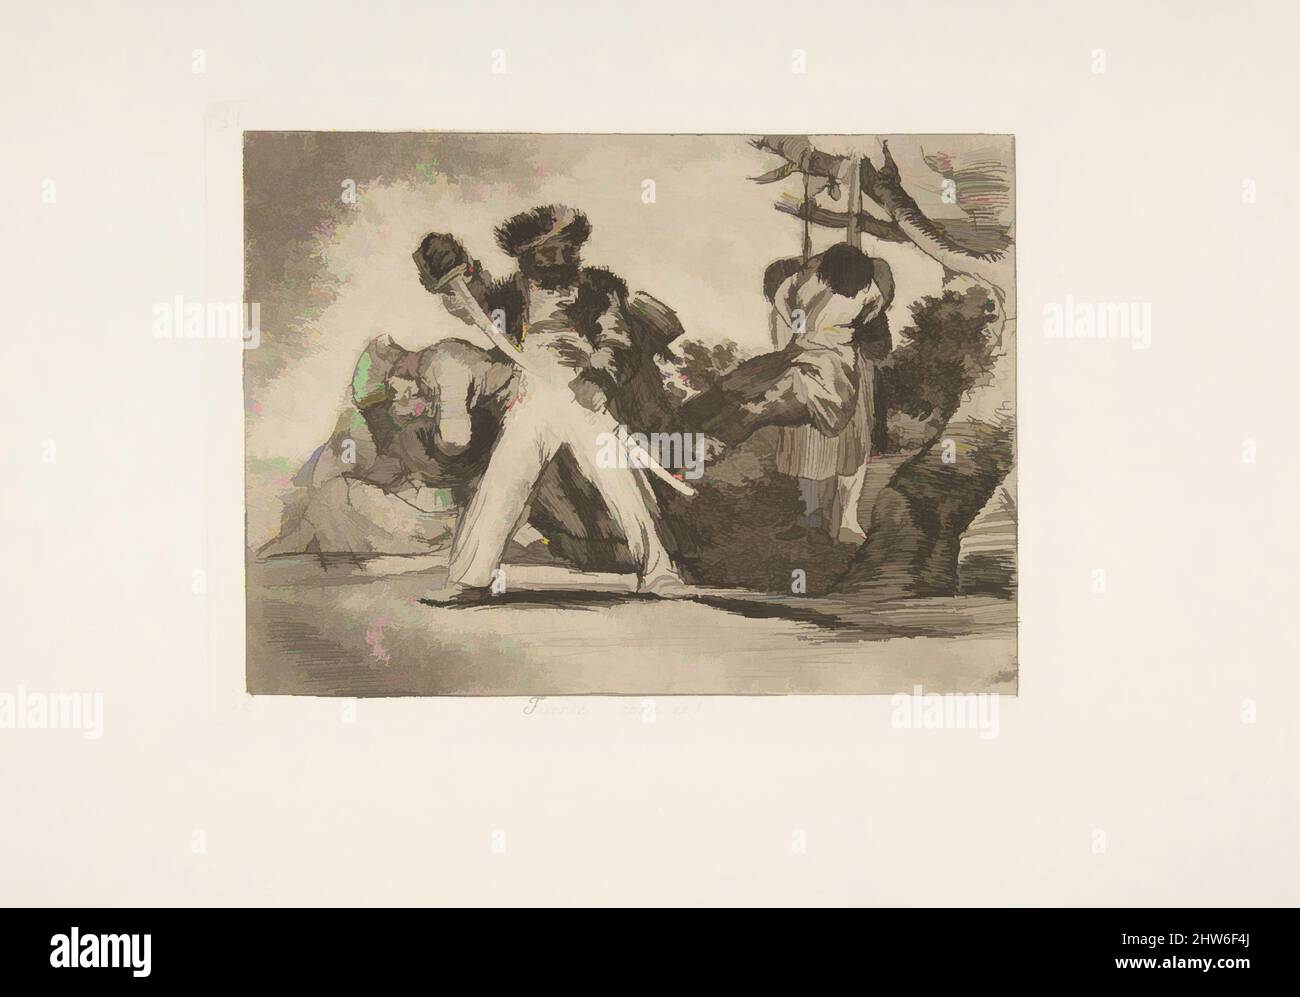 Art inspiré par la planche 31 de « The Disasters of War » (Los Desastres de la Guerra) : « c'est dur ! » (Fuerte cosa es!), 1810 (publié en 1863), Etching, aquatint bruni et point sec, plaque : 8 1/16 po. × 6 po (20,5 × 15,3 cm), Prints, Goya (Francisco de Goya y Lucientes) (espagnol, oeuvres classiques modernisées par Artotop avec une touche de modernité. Formes, couleur et valeur, impact visuel accrocheur sur l'art émotions par la liberté d'œuvres d'art d'une manière contemporaine. Un message intemporel qui cherche une nouvelle direction créative. Artistes qui se tournent vers le support numérique et créent le NFT Artotop Banque D'Images